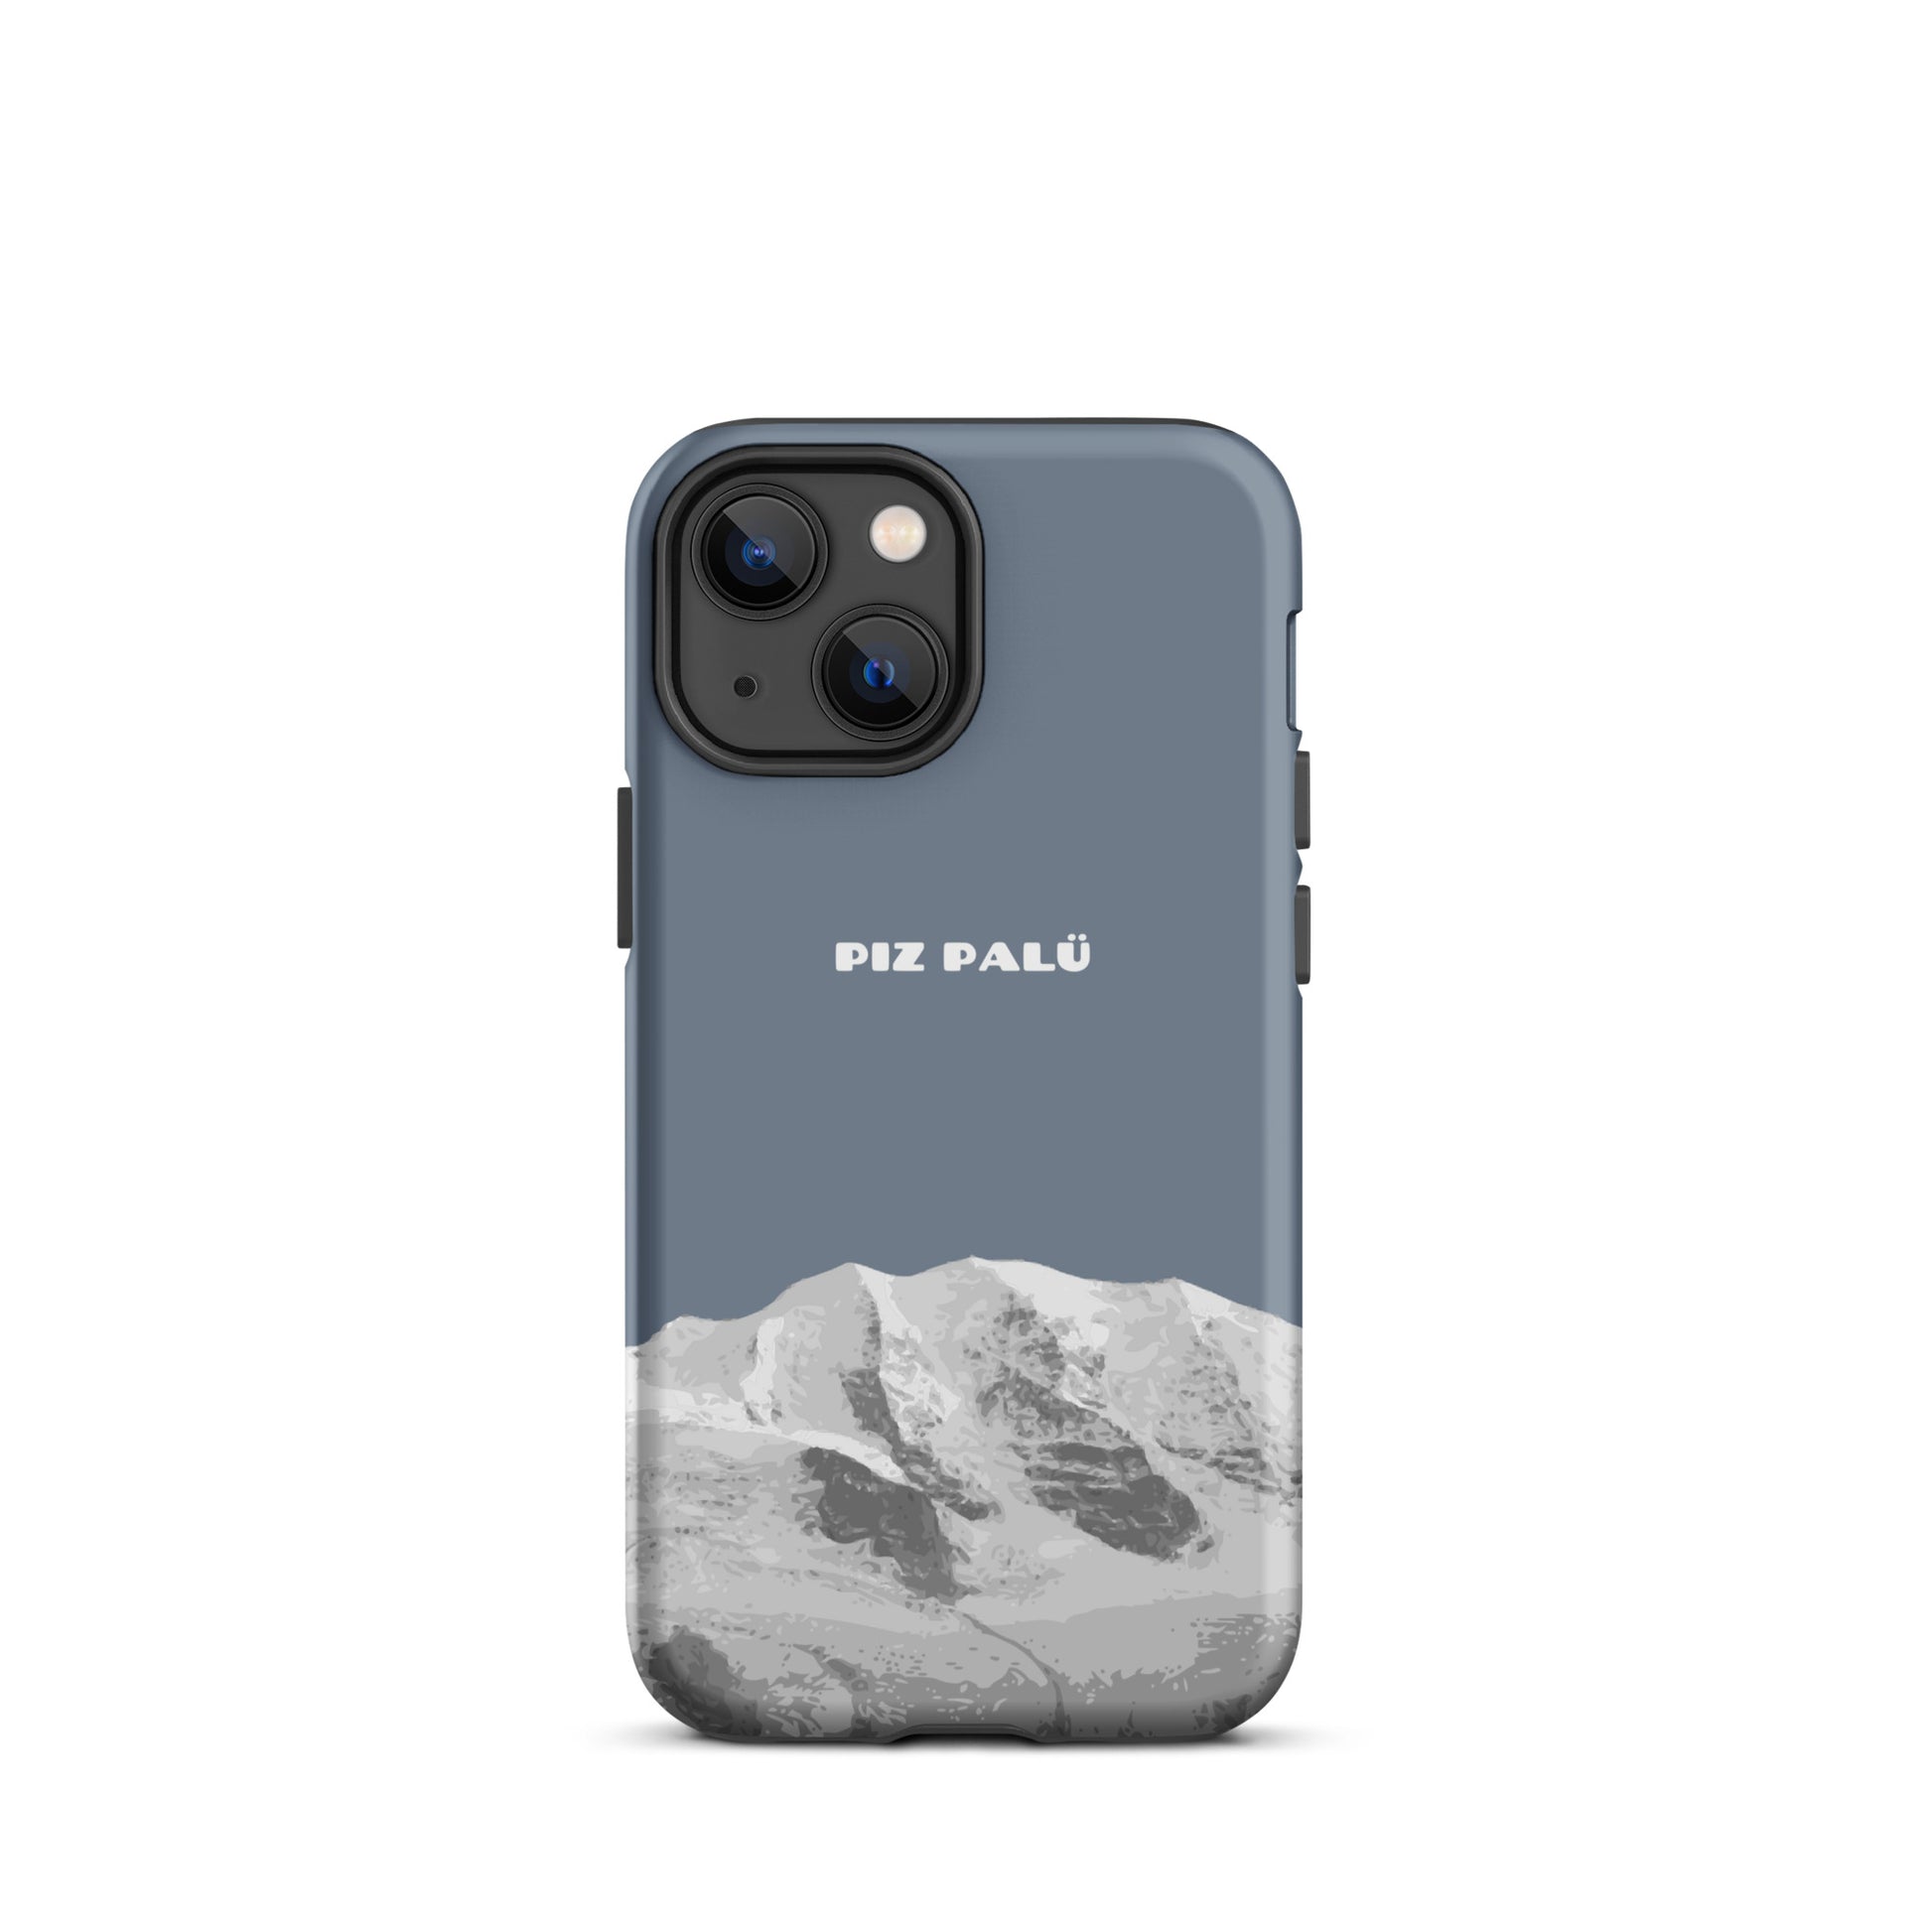 Hülle für das iPhone 13 Mini von Apple in der Farbe Schiefergrau, dass den Piz Palü in Graubünden zeigt.